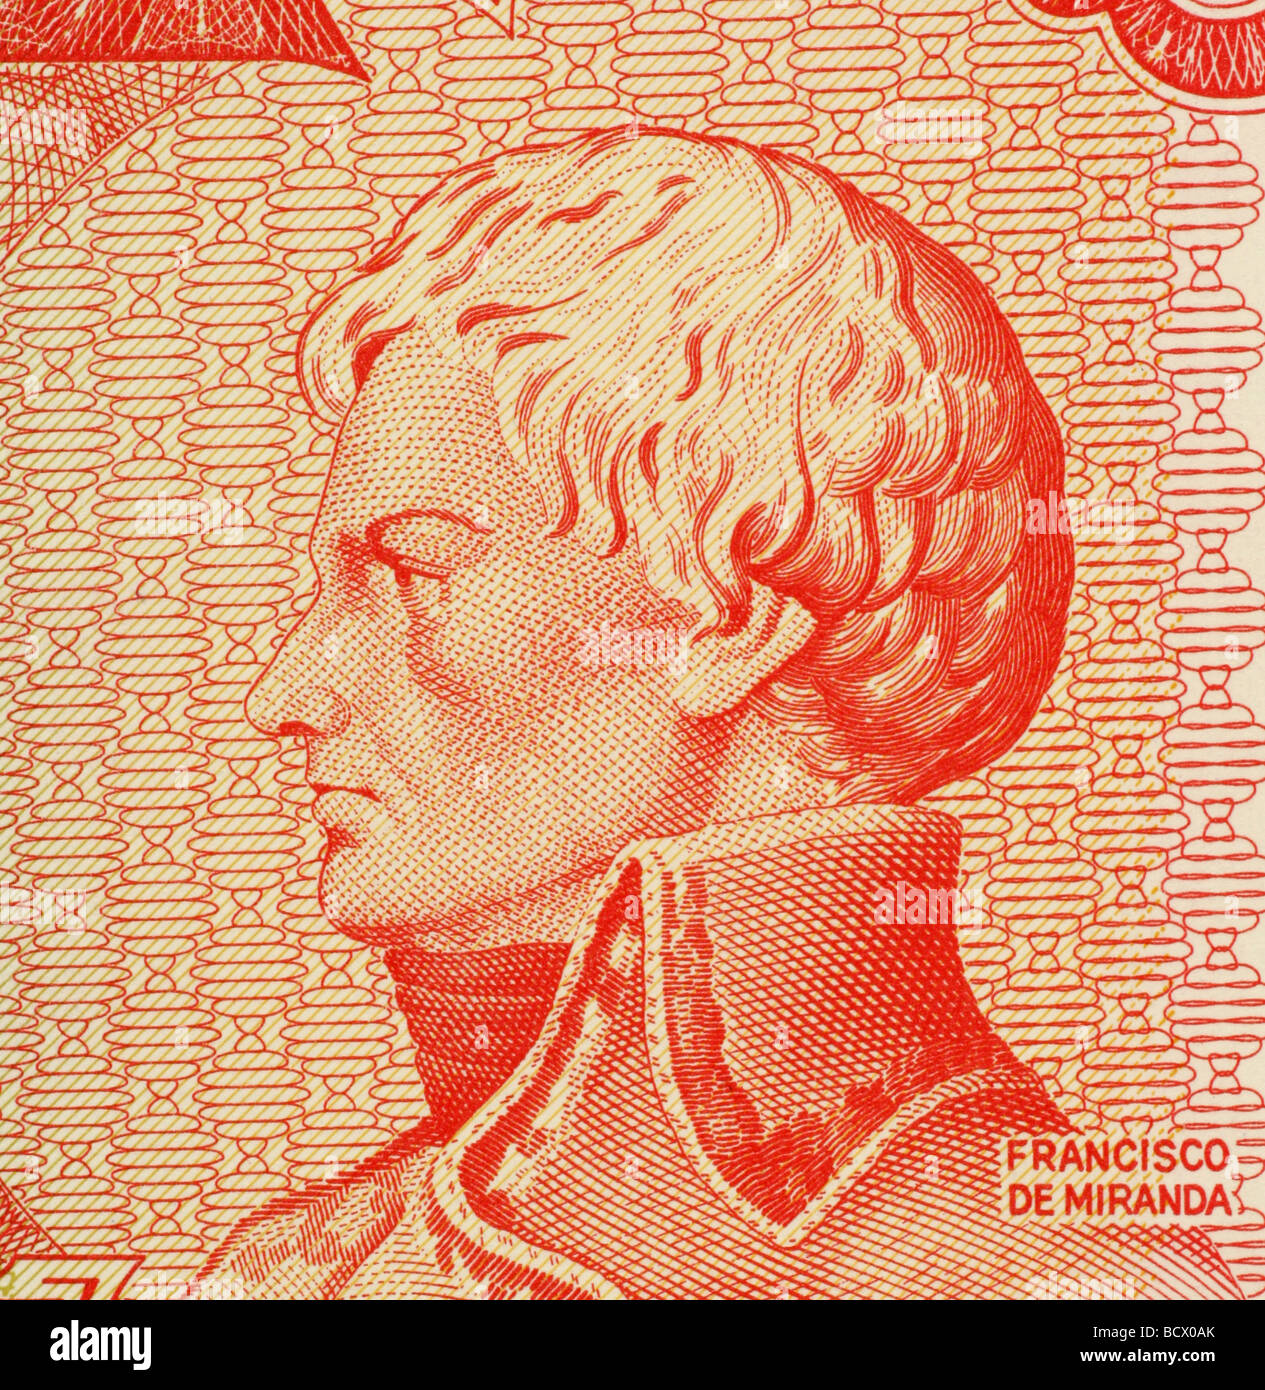 Francisco de Miranda on 5 Bolivares 1989 Banknote from Venezuela Stock Photo